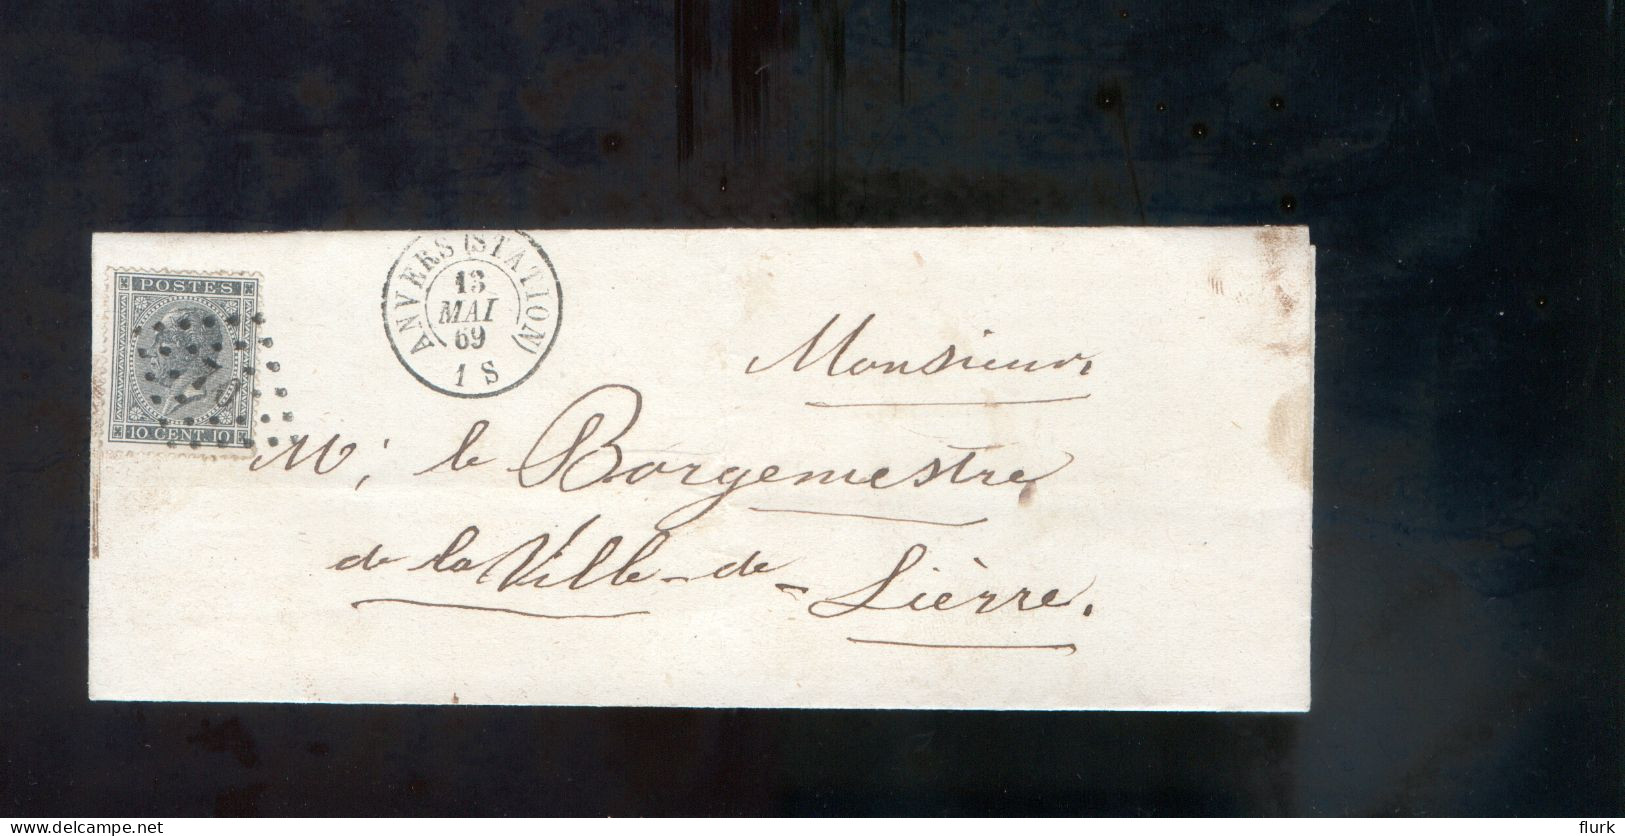 België OCB17 Gestempeld Op Brief Anvers-Lierre 1869 Perfect (2 Scans) - 1865-1866 Profilo Sinistro